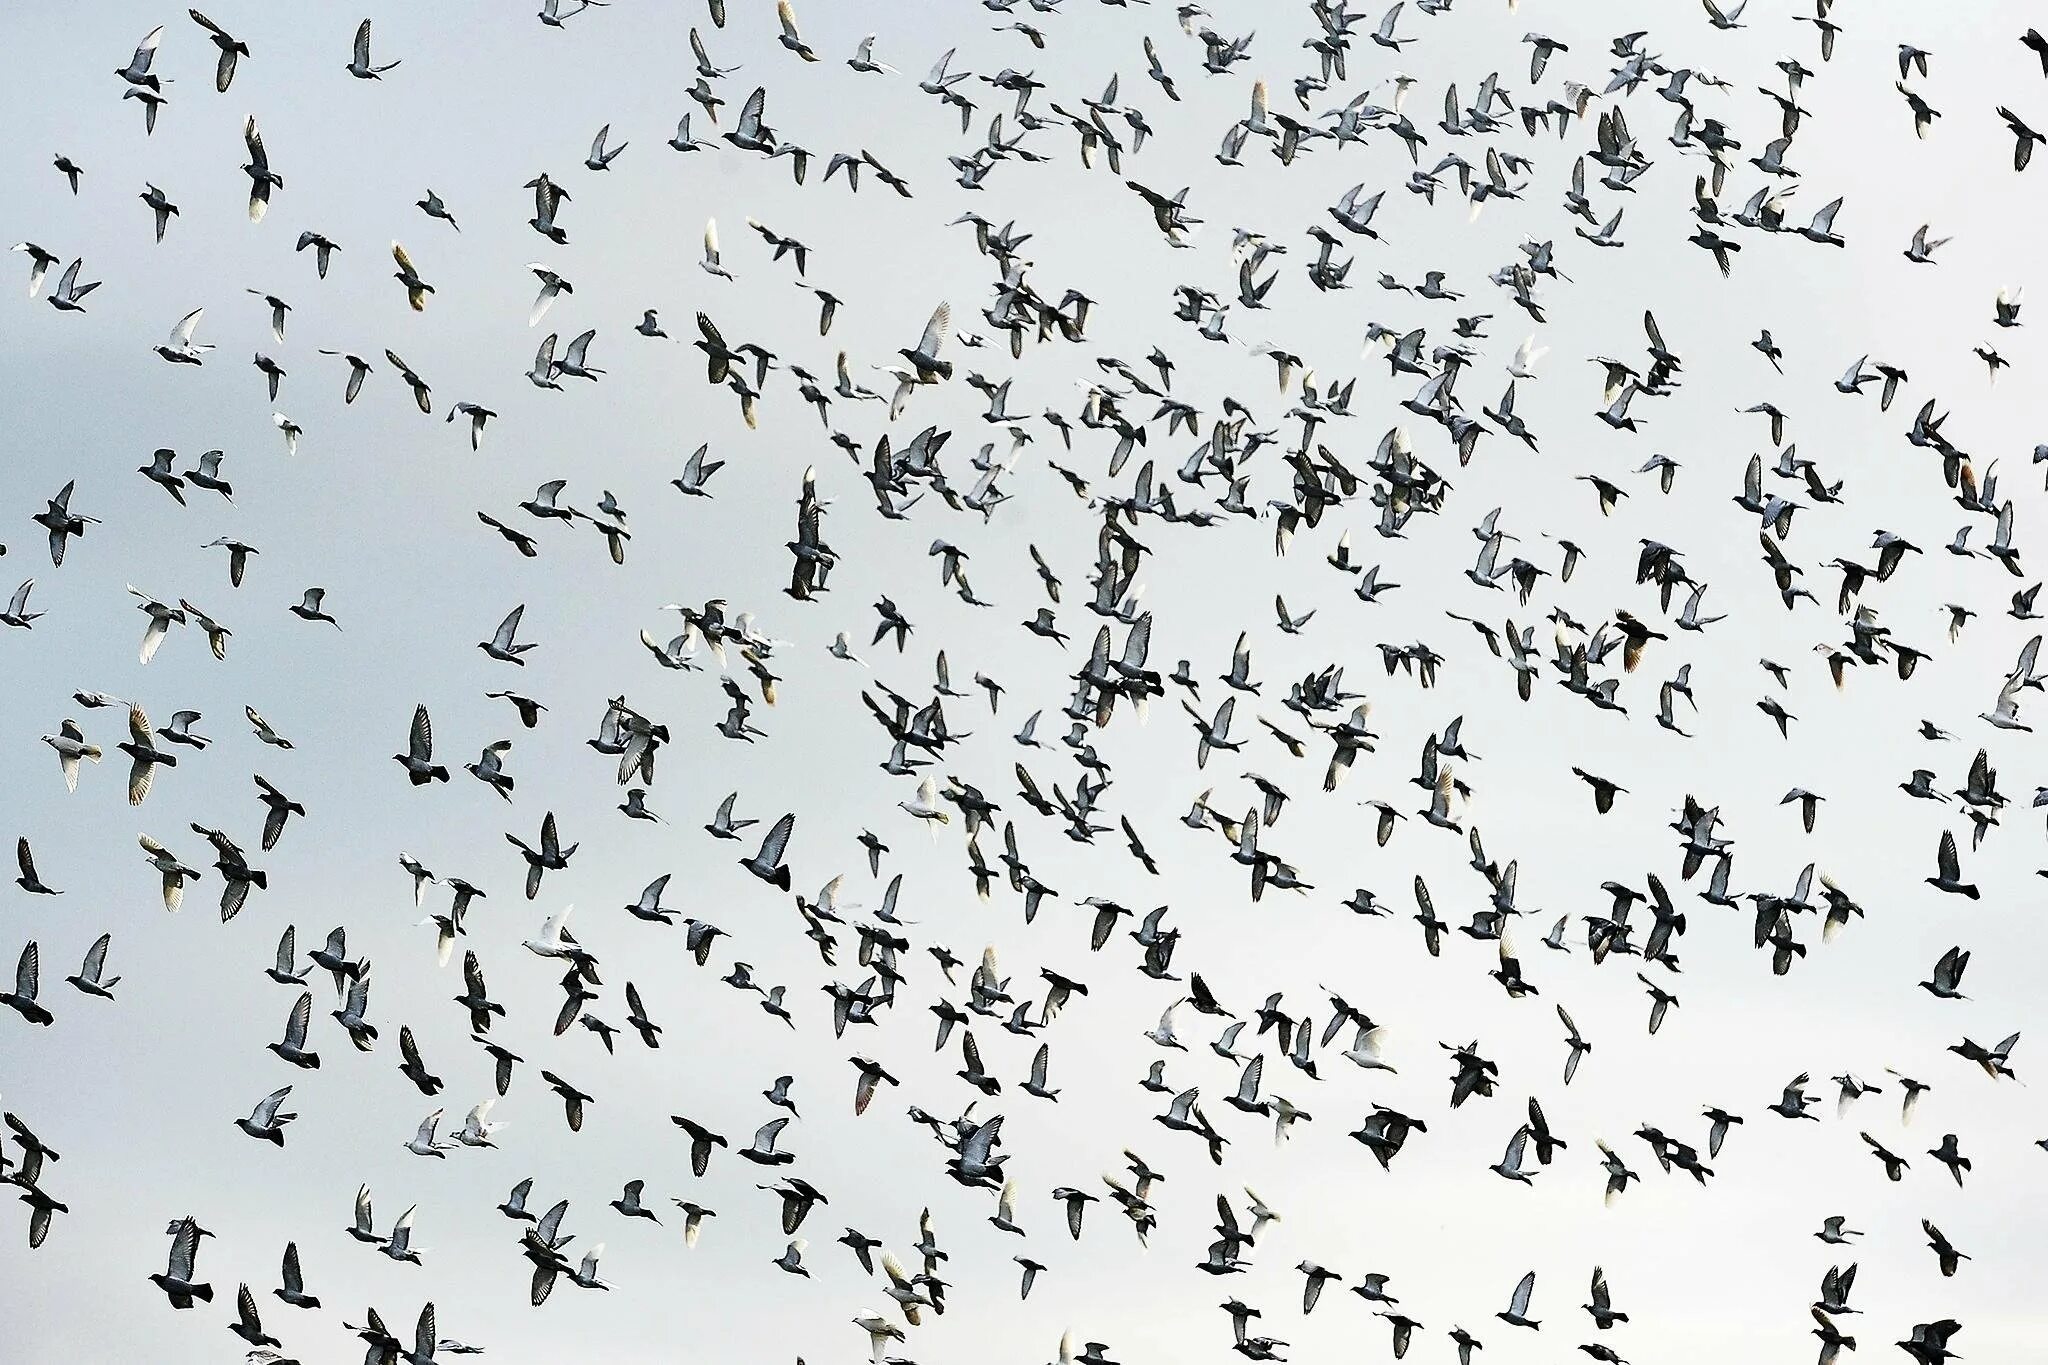 Много птиц. Много птиц в небе. Стая голубей. Очень много голубей. Видеть много птиц